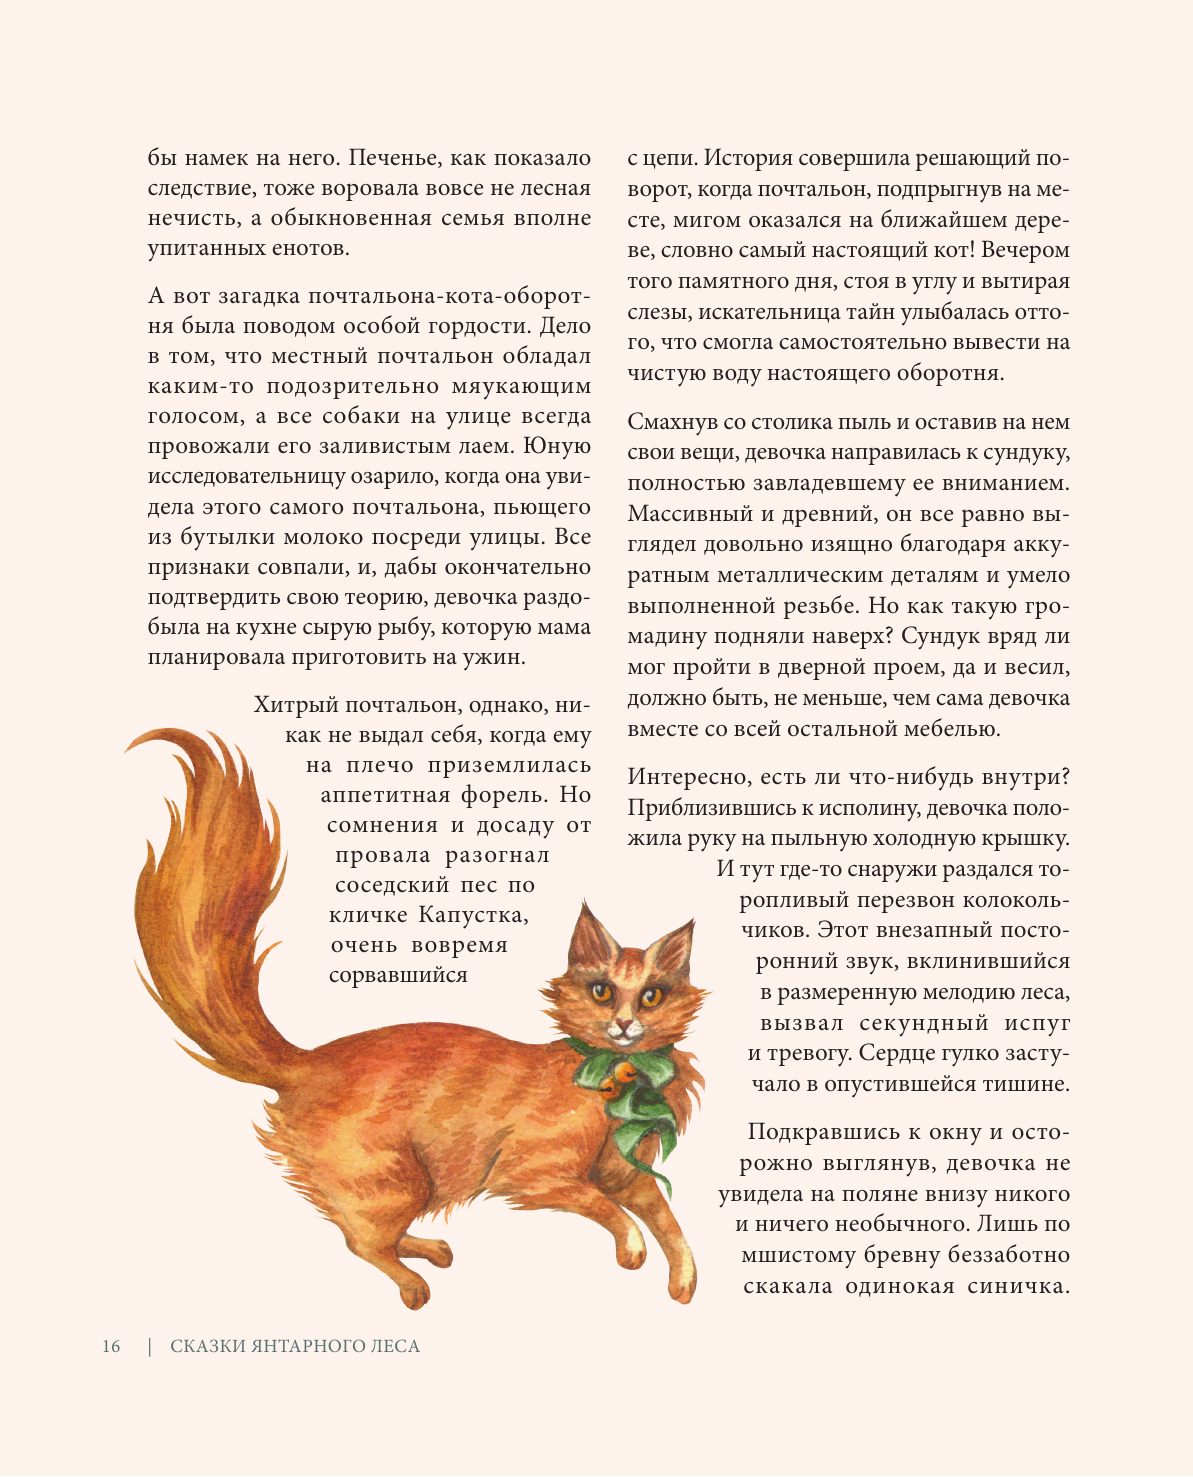 Сказки Янтарного леса. Вышивка «свободной рукой» и немного магии от AmberryLamb - фото №15